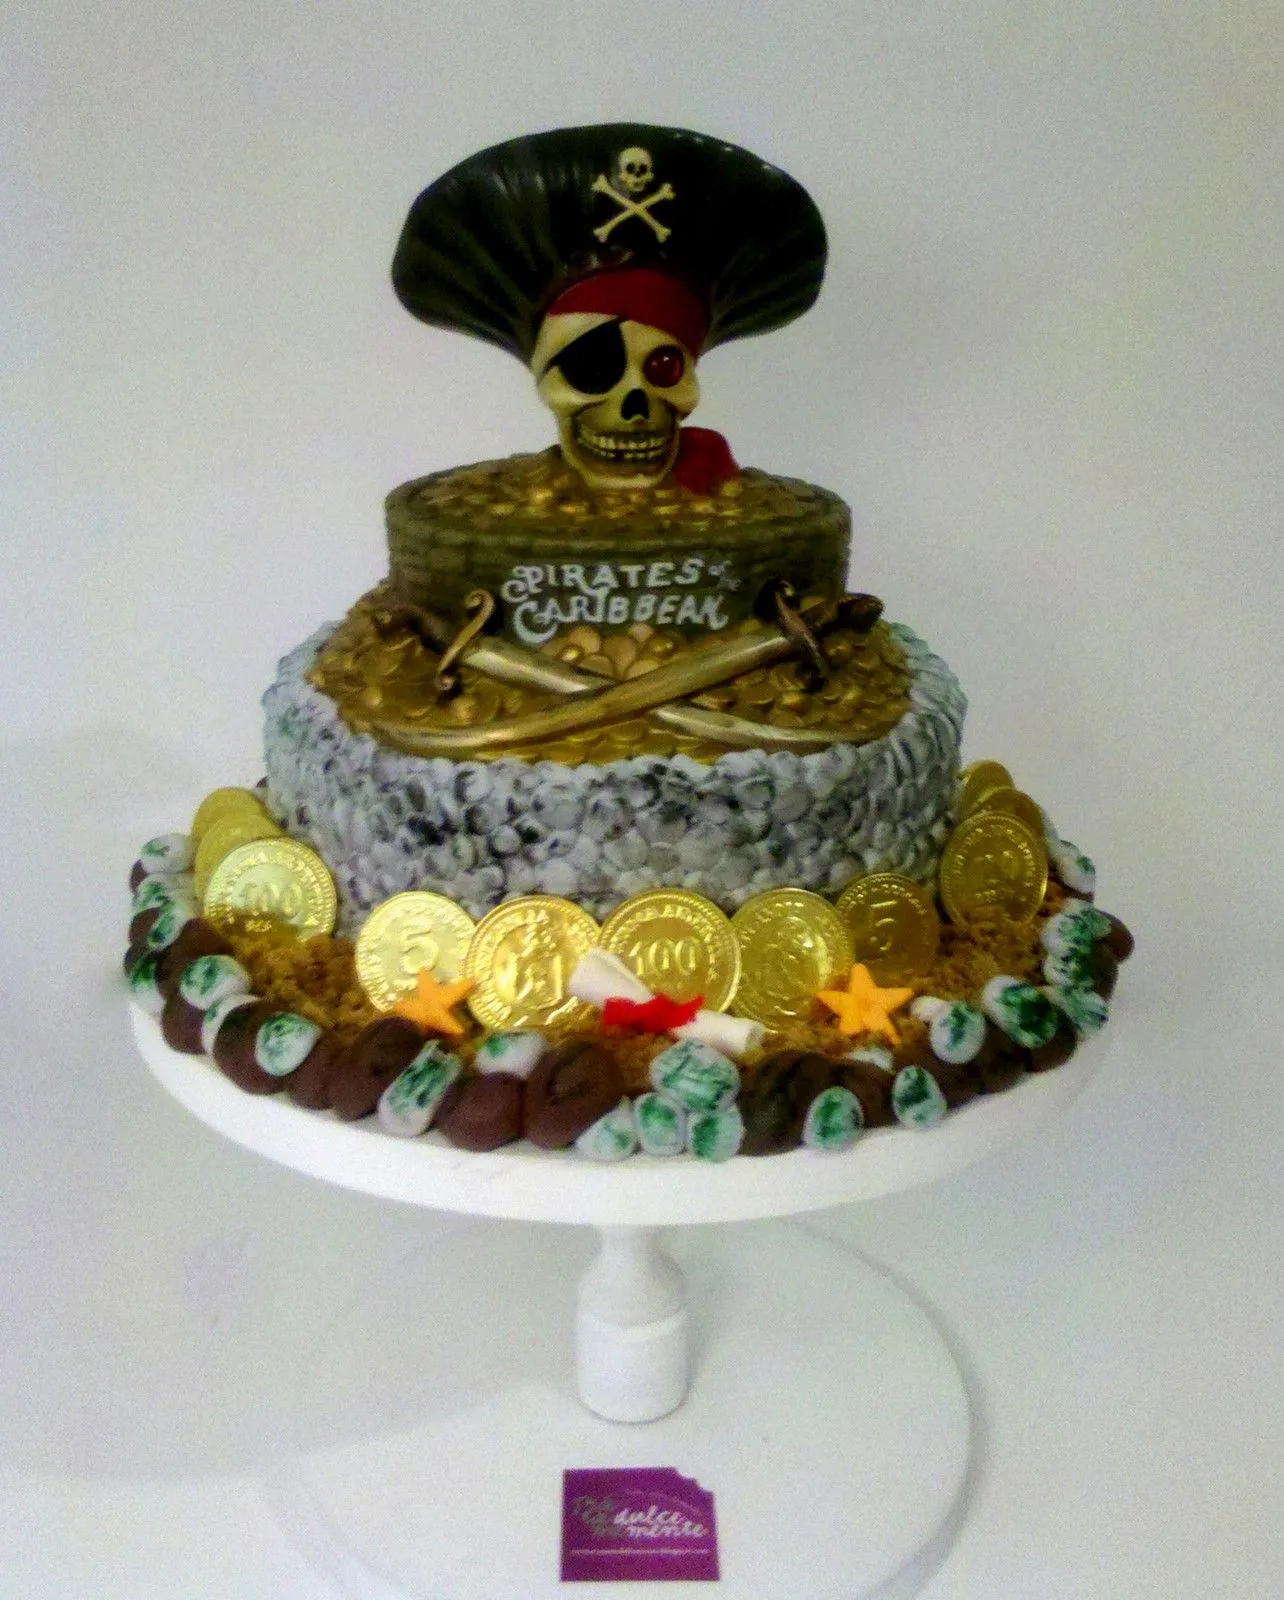 Cumpleaños `piratas del caribe - Imagui